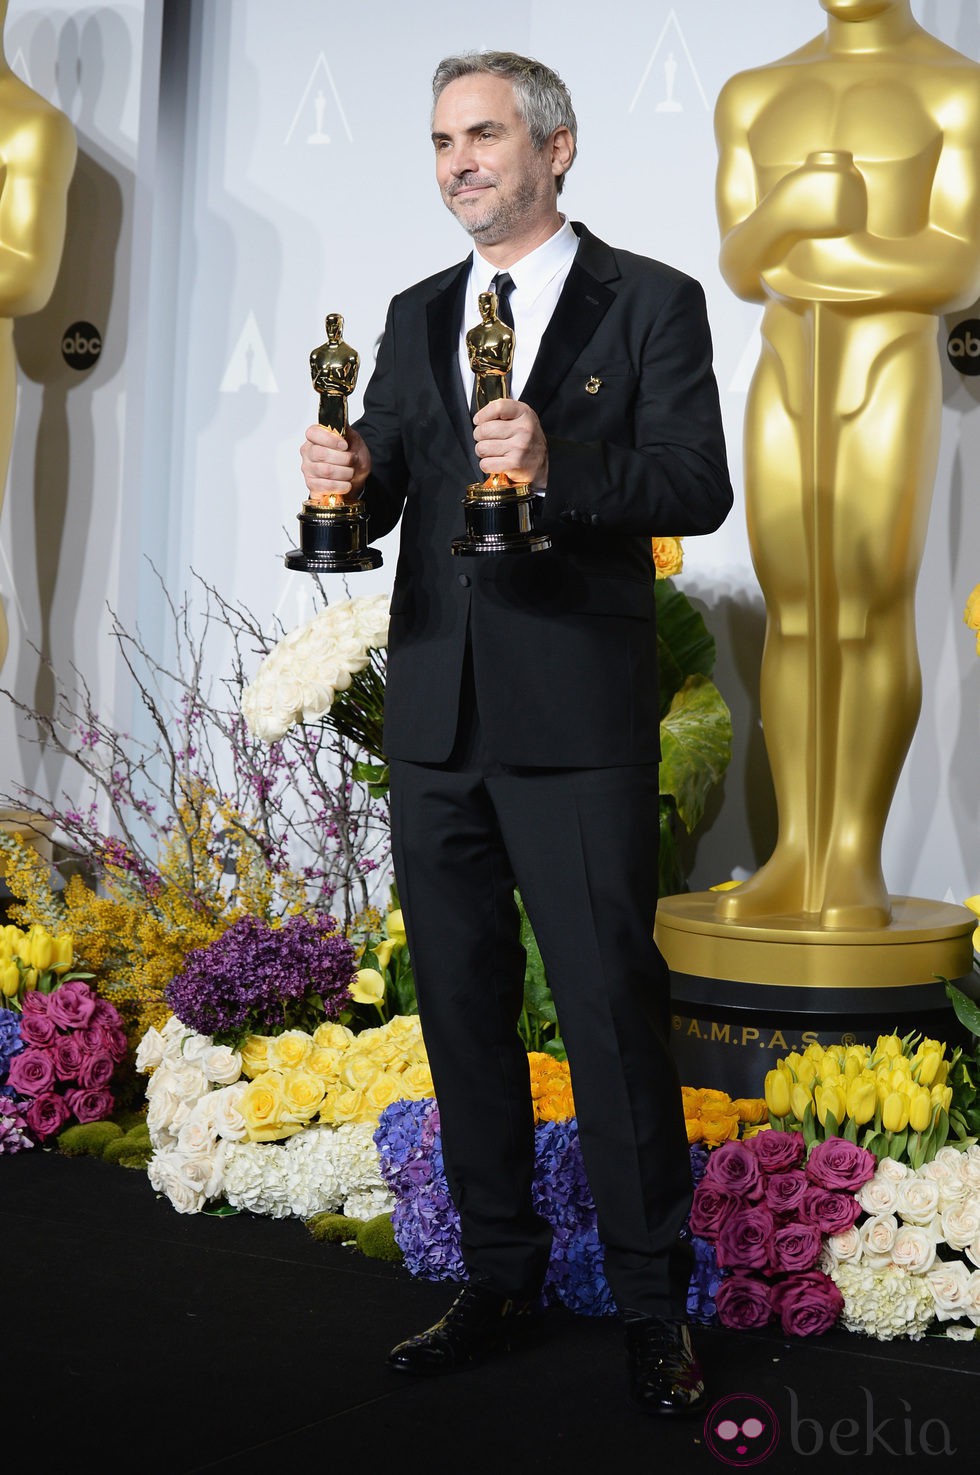 Alfonso Cuarón posa con su premio en los Oscar 2014